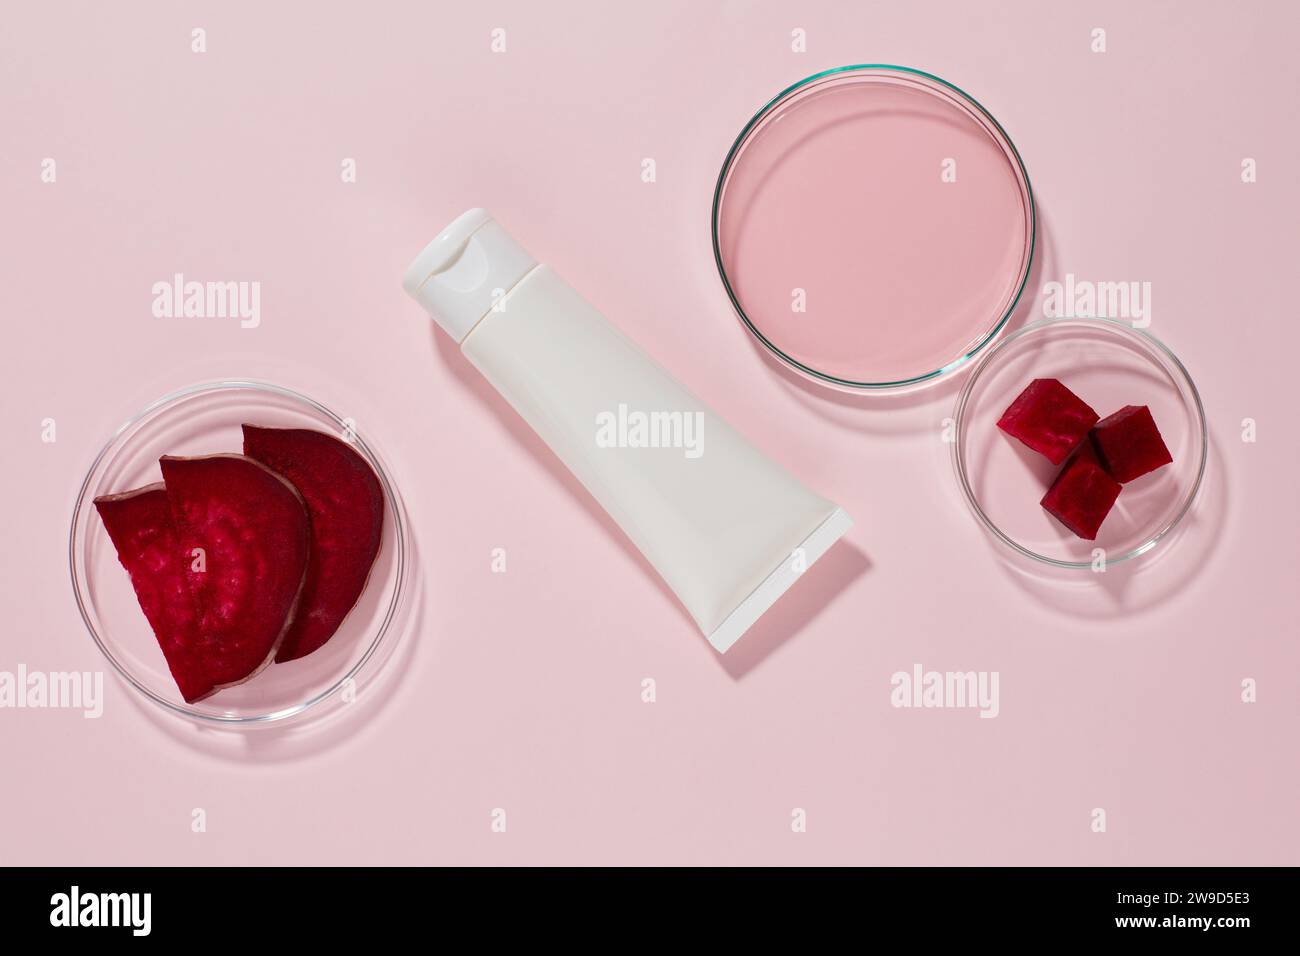 Una provetta di plastica bianca senza marchio esposta su sfondo rosa con piastre di Petri contenenti fette ed essenza di barbabietola. Mockup per design, pubblicità Foto Stock